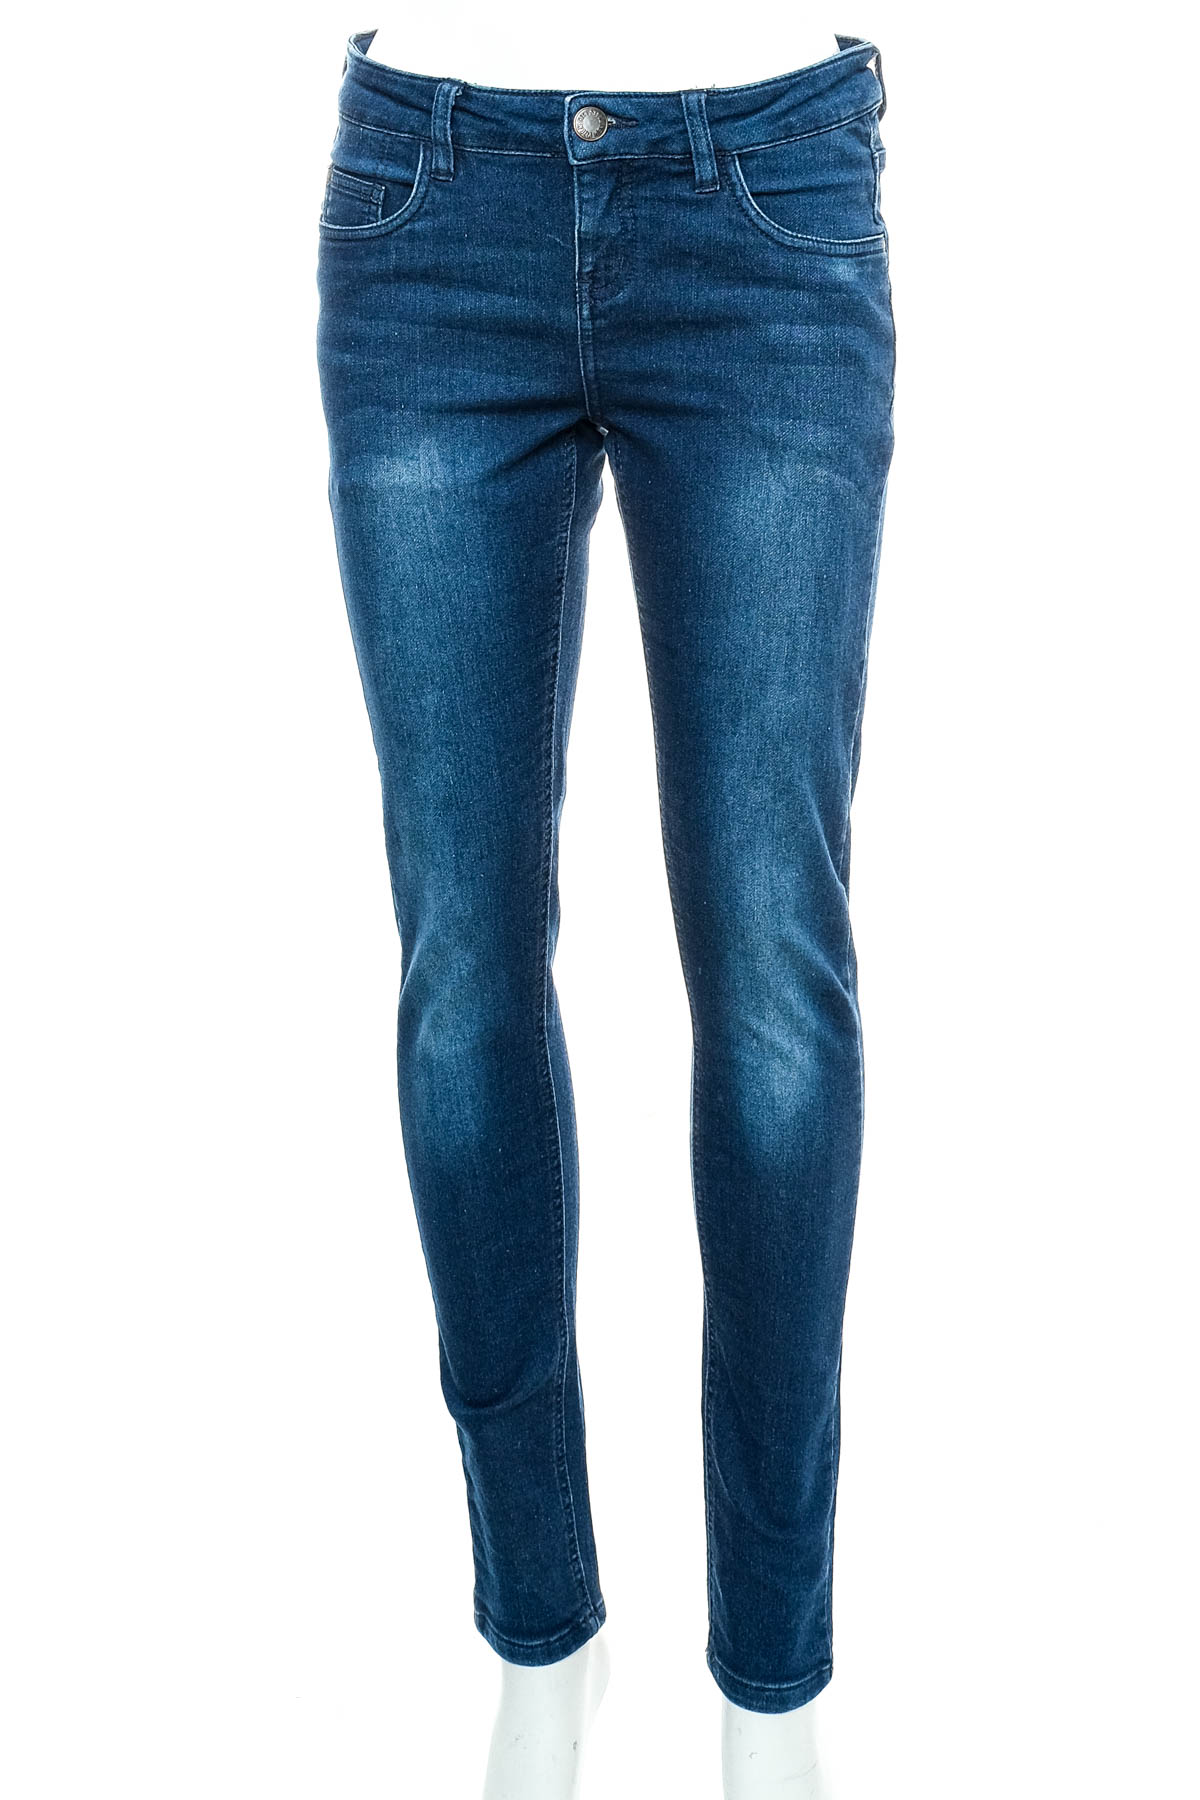 Women's jeans - Esmara - 0